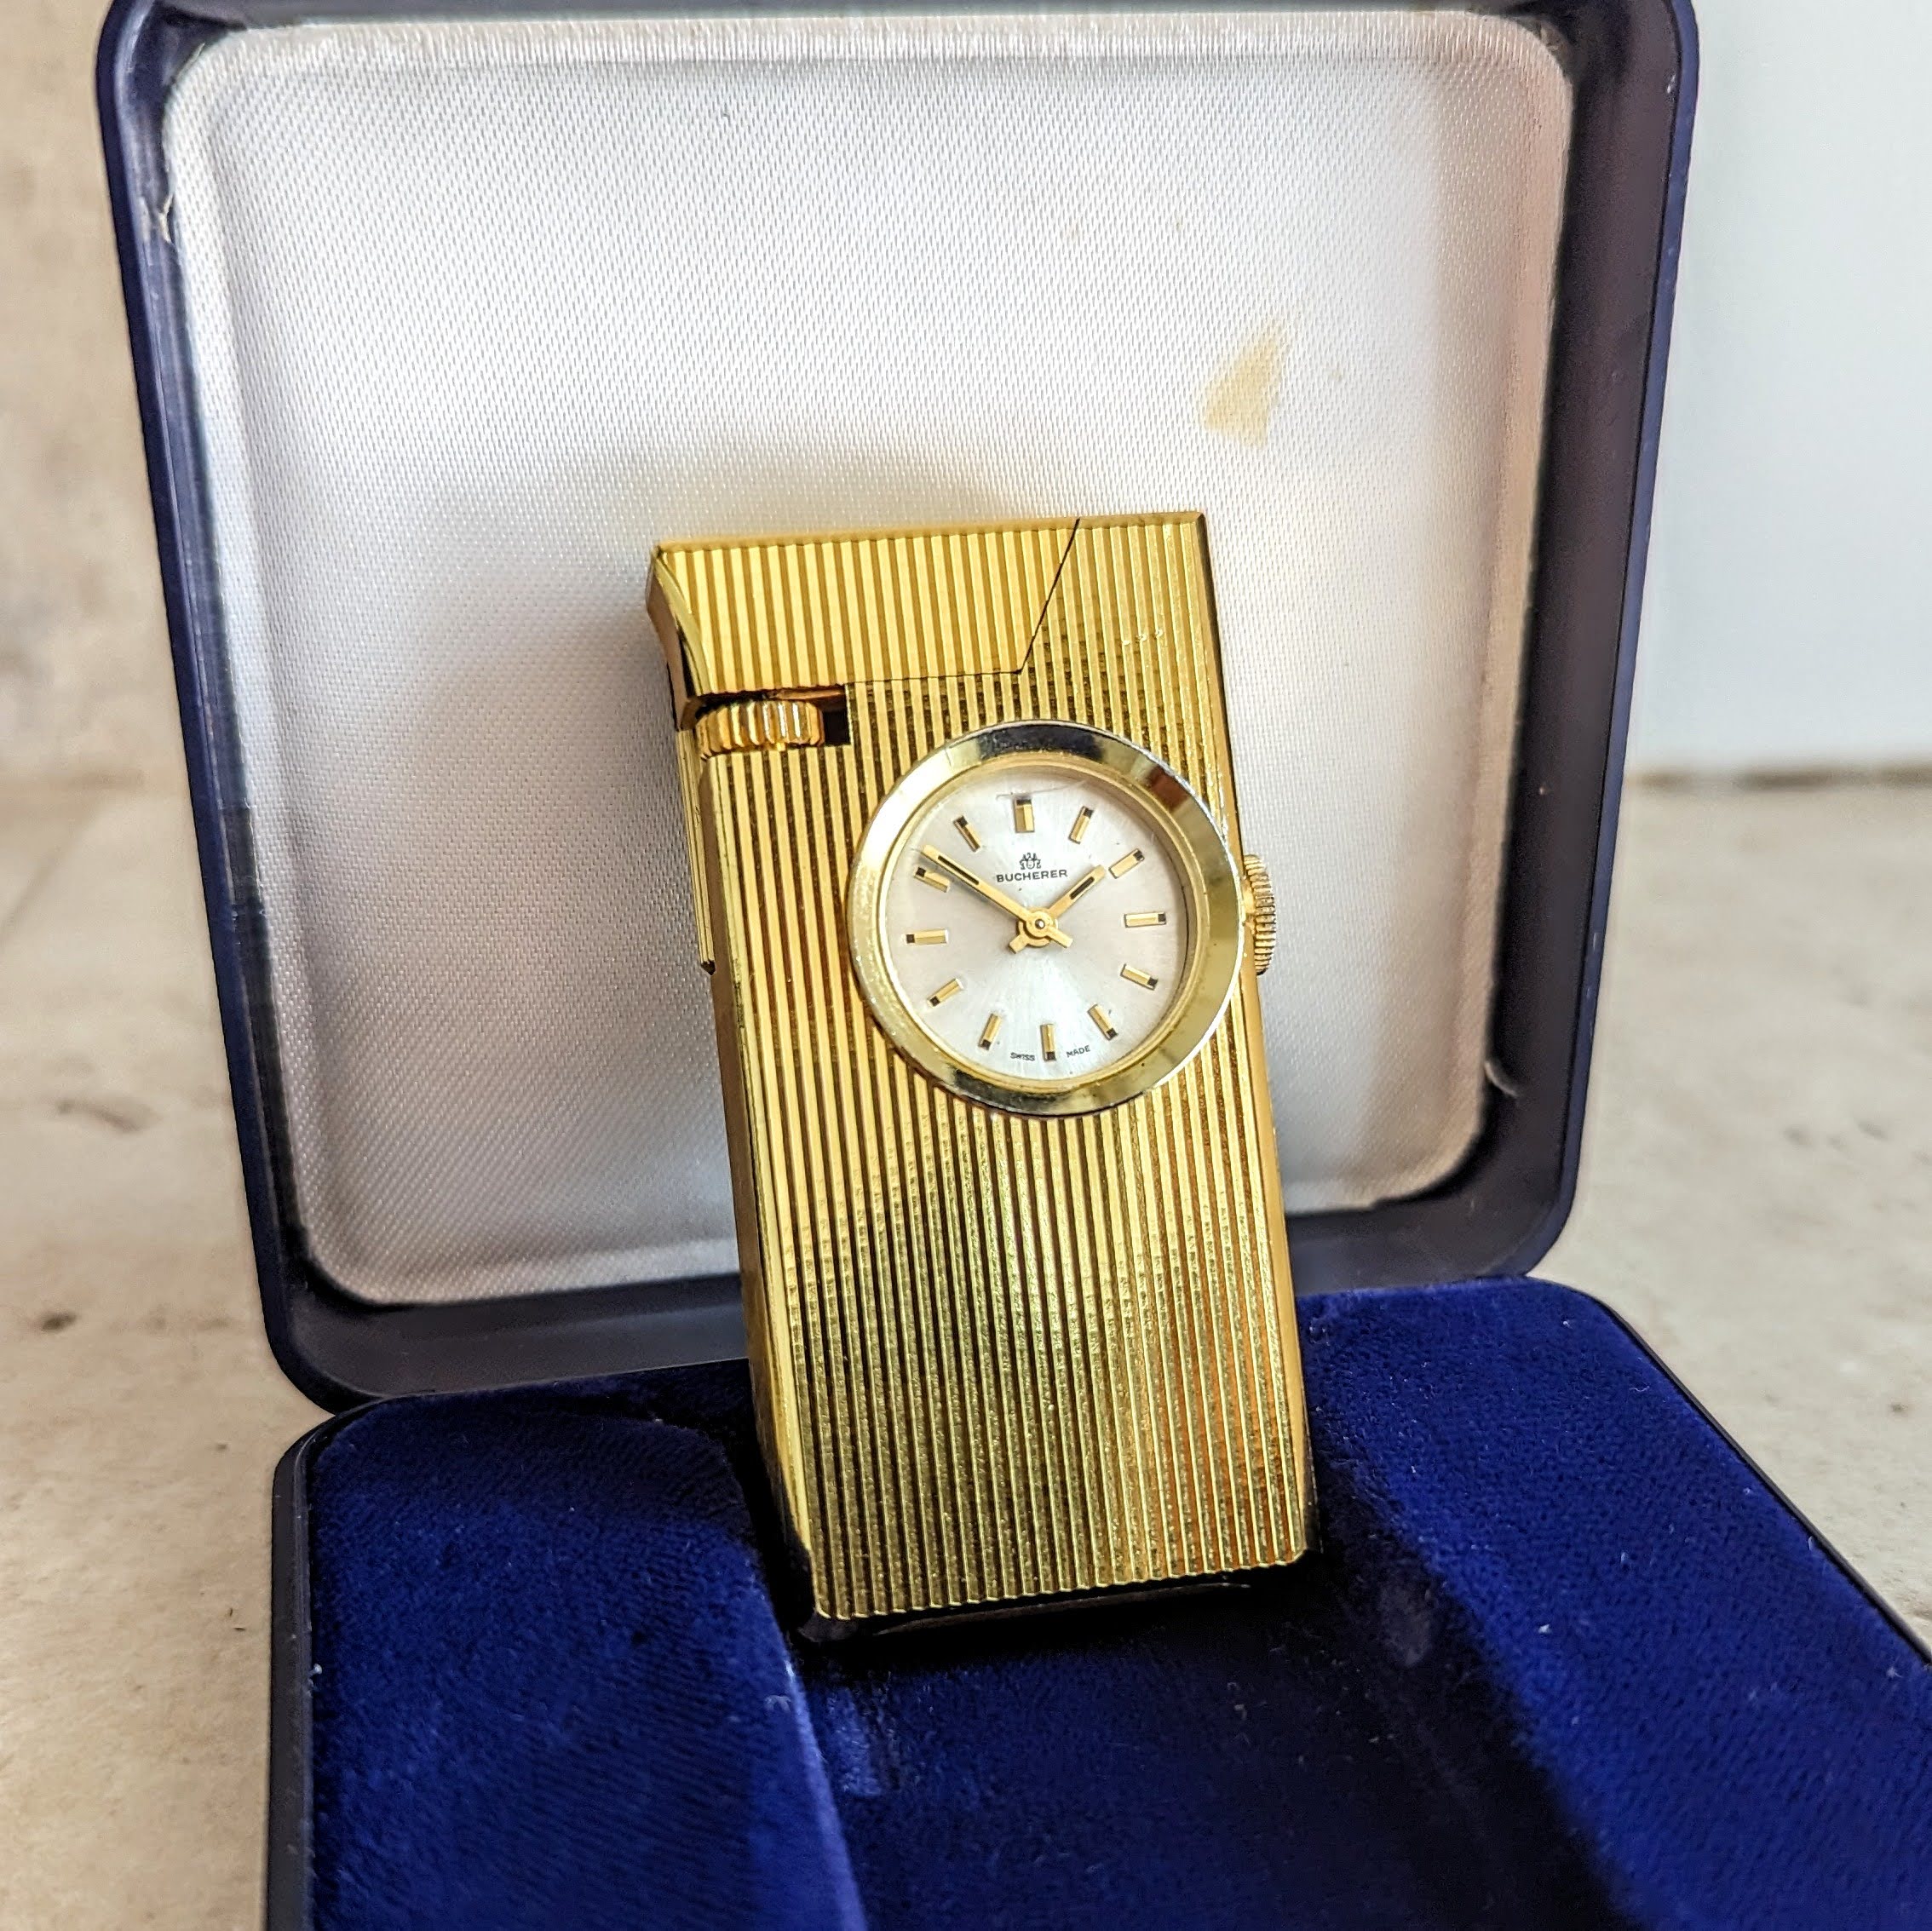 Vintage BUCHERER Clock-Ligther Swiss Made Mechanical Watch 17 Jewels ...